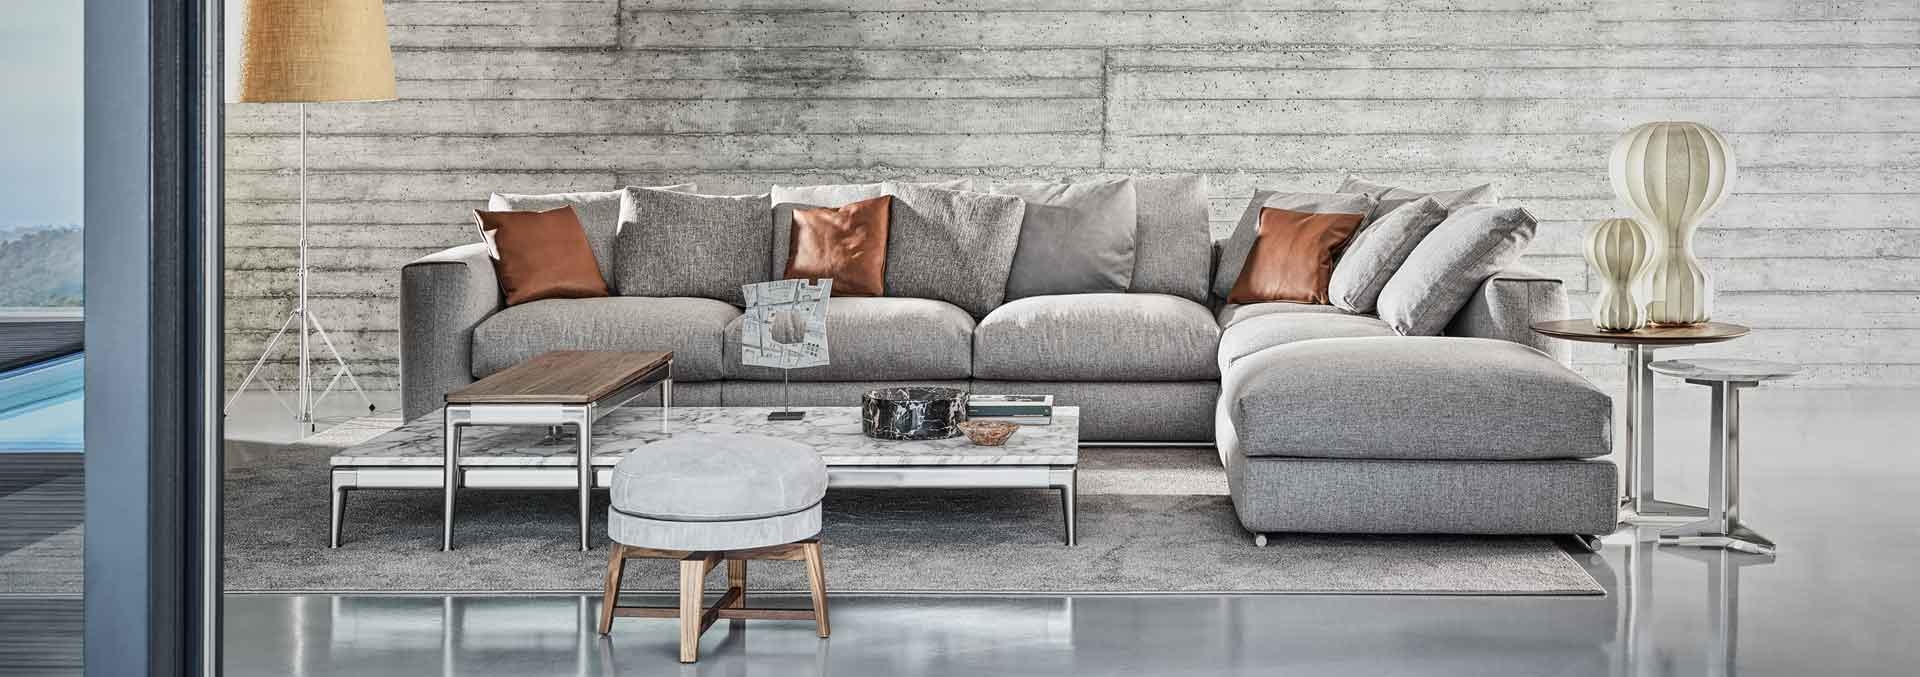 Modifica tu sofá sin tener que gastar mucho dinero